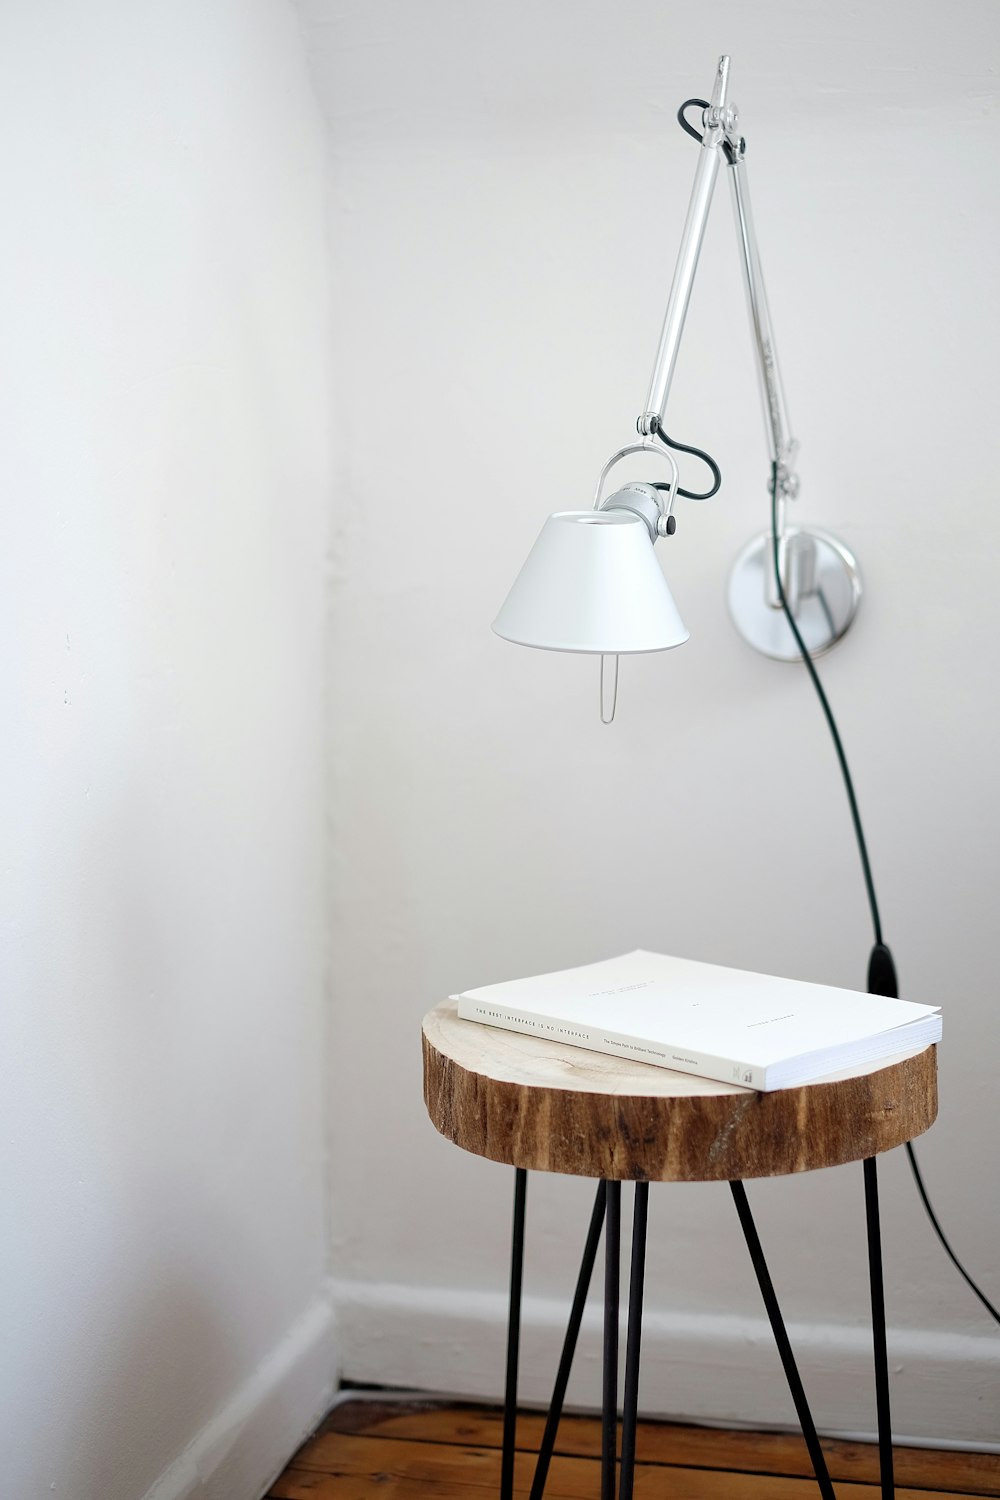 갈색 의자 아래 흰색 벽에 회색 책상 램프 마운트, 벽 모서리 근처 상단에 흰색 책